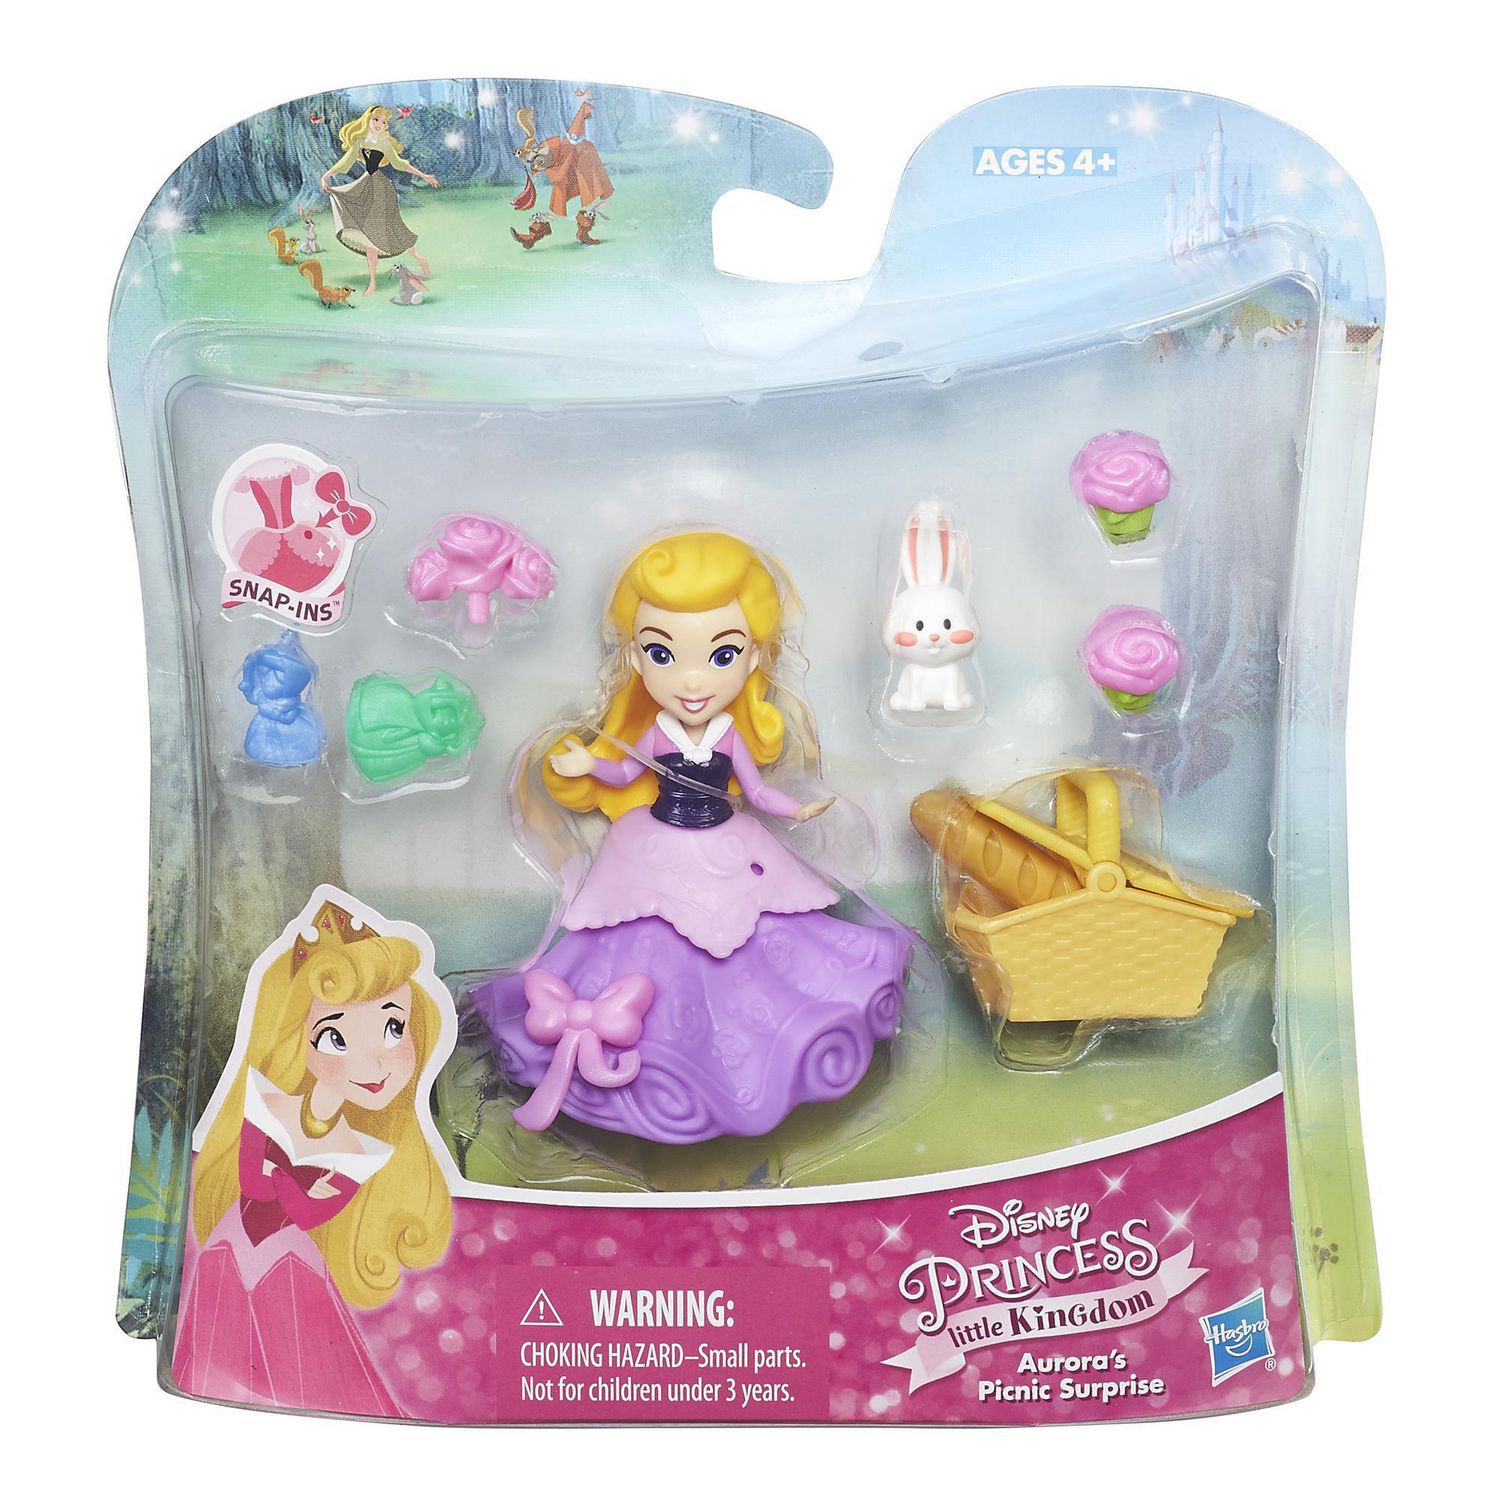 Disney Princess Little Kingdom Aurora's Picnic Surprise